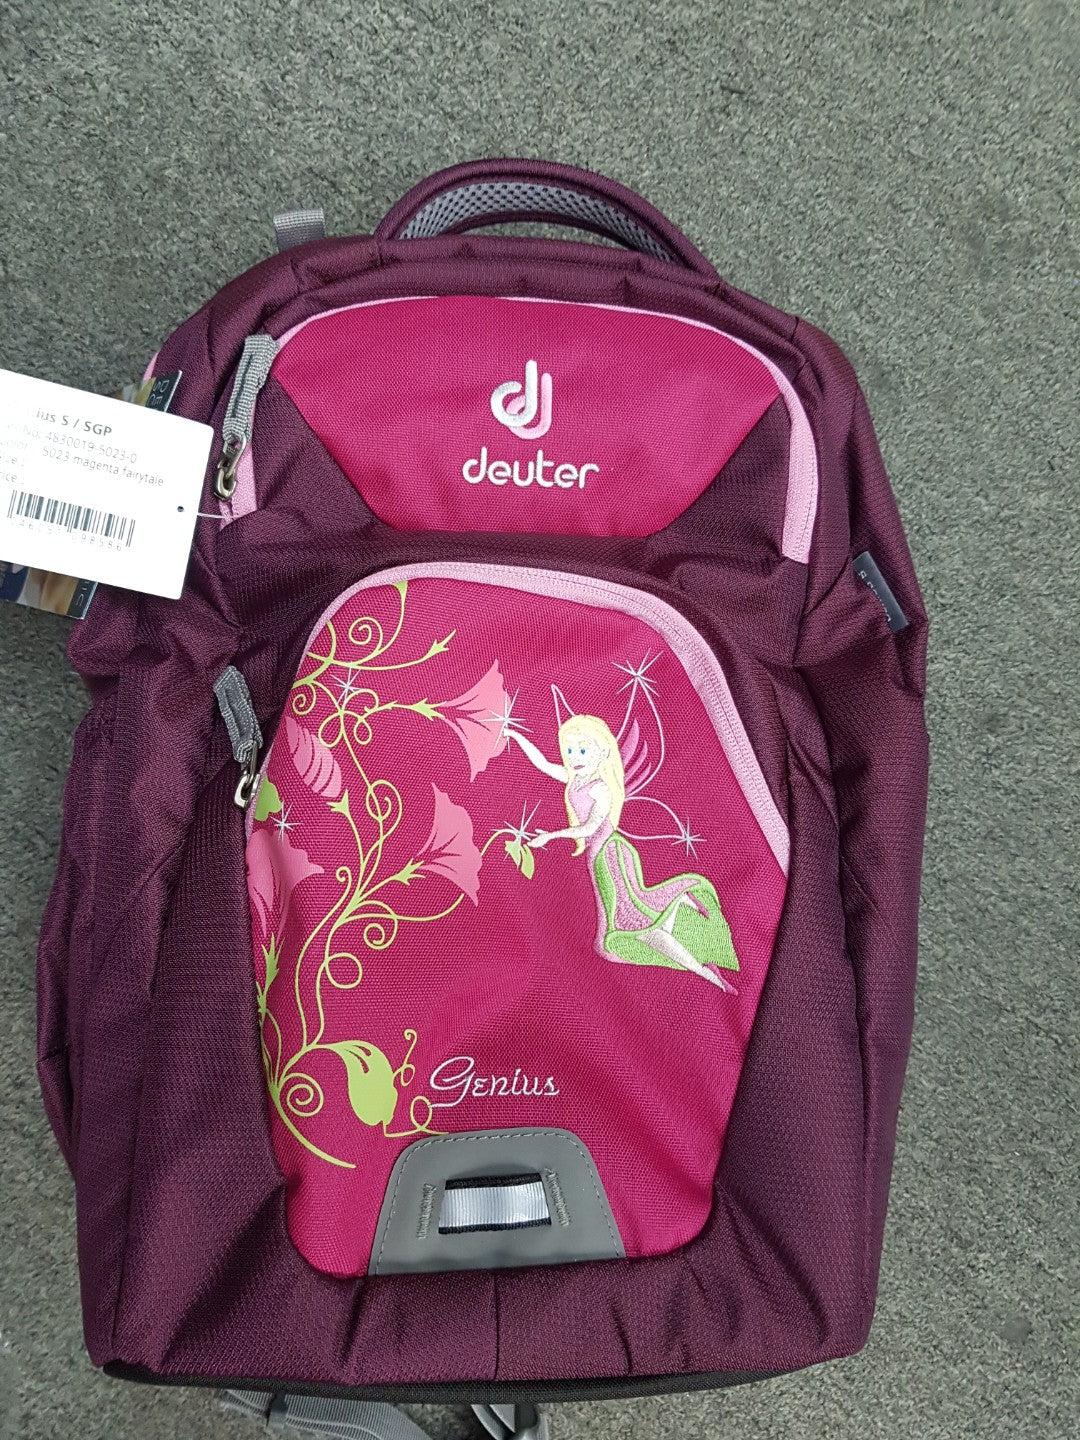 Deuter Genius S Fairy - Backpackers Gallery backpacks bag